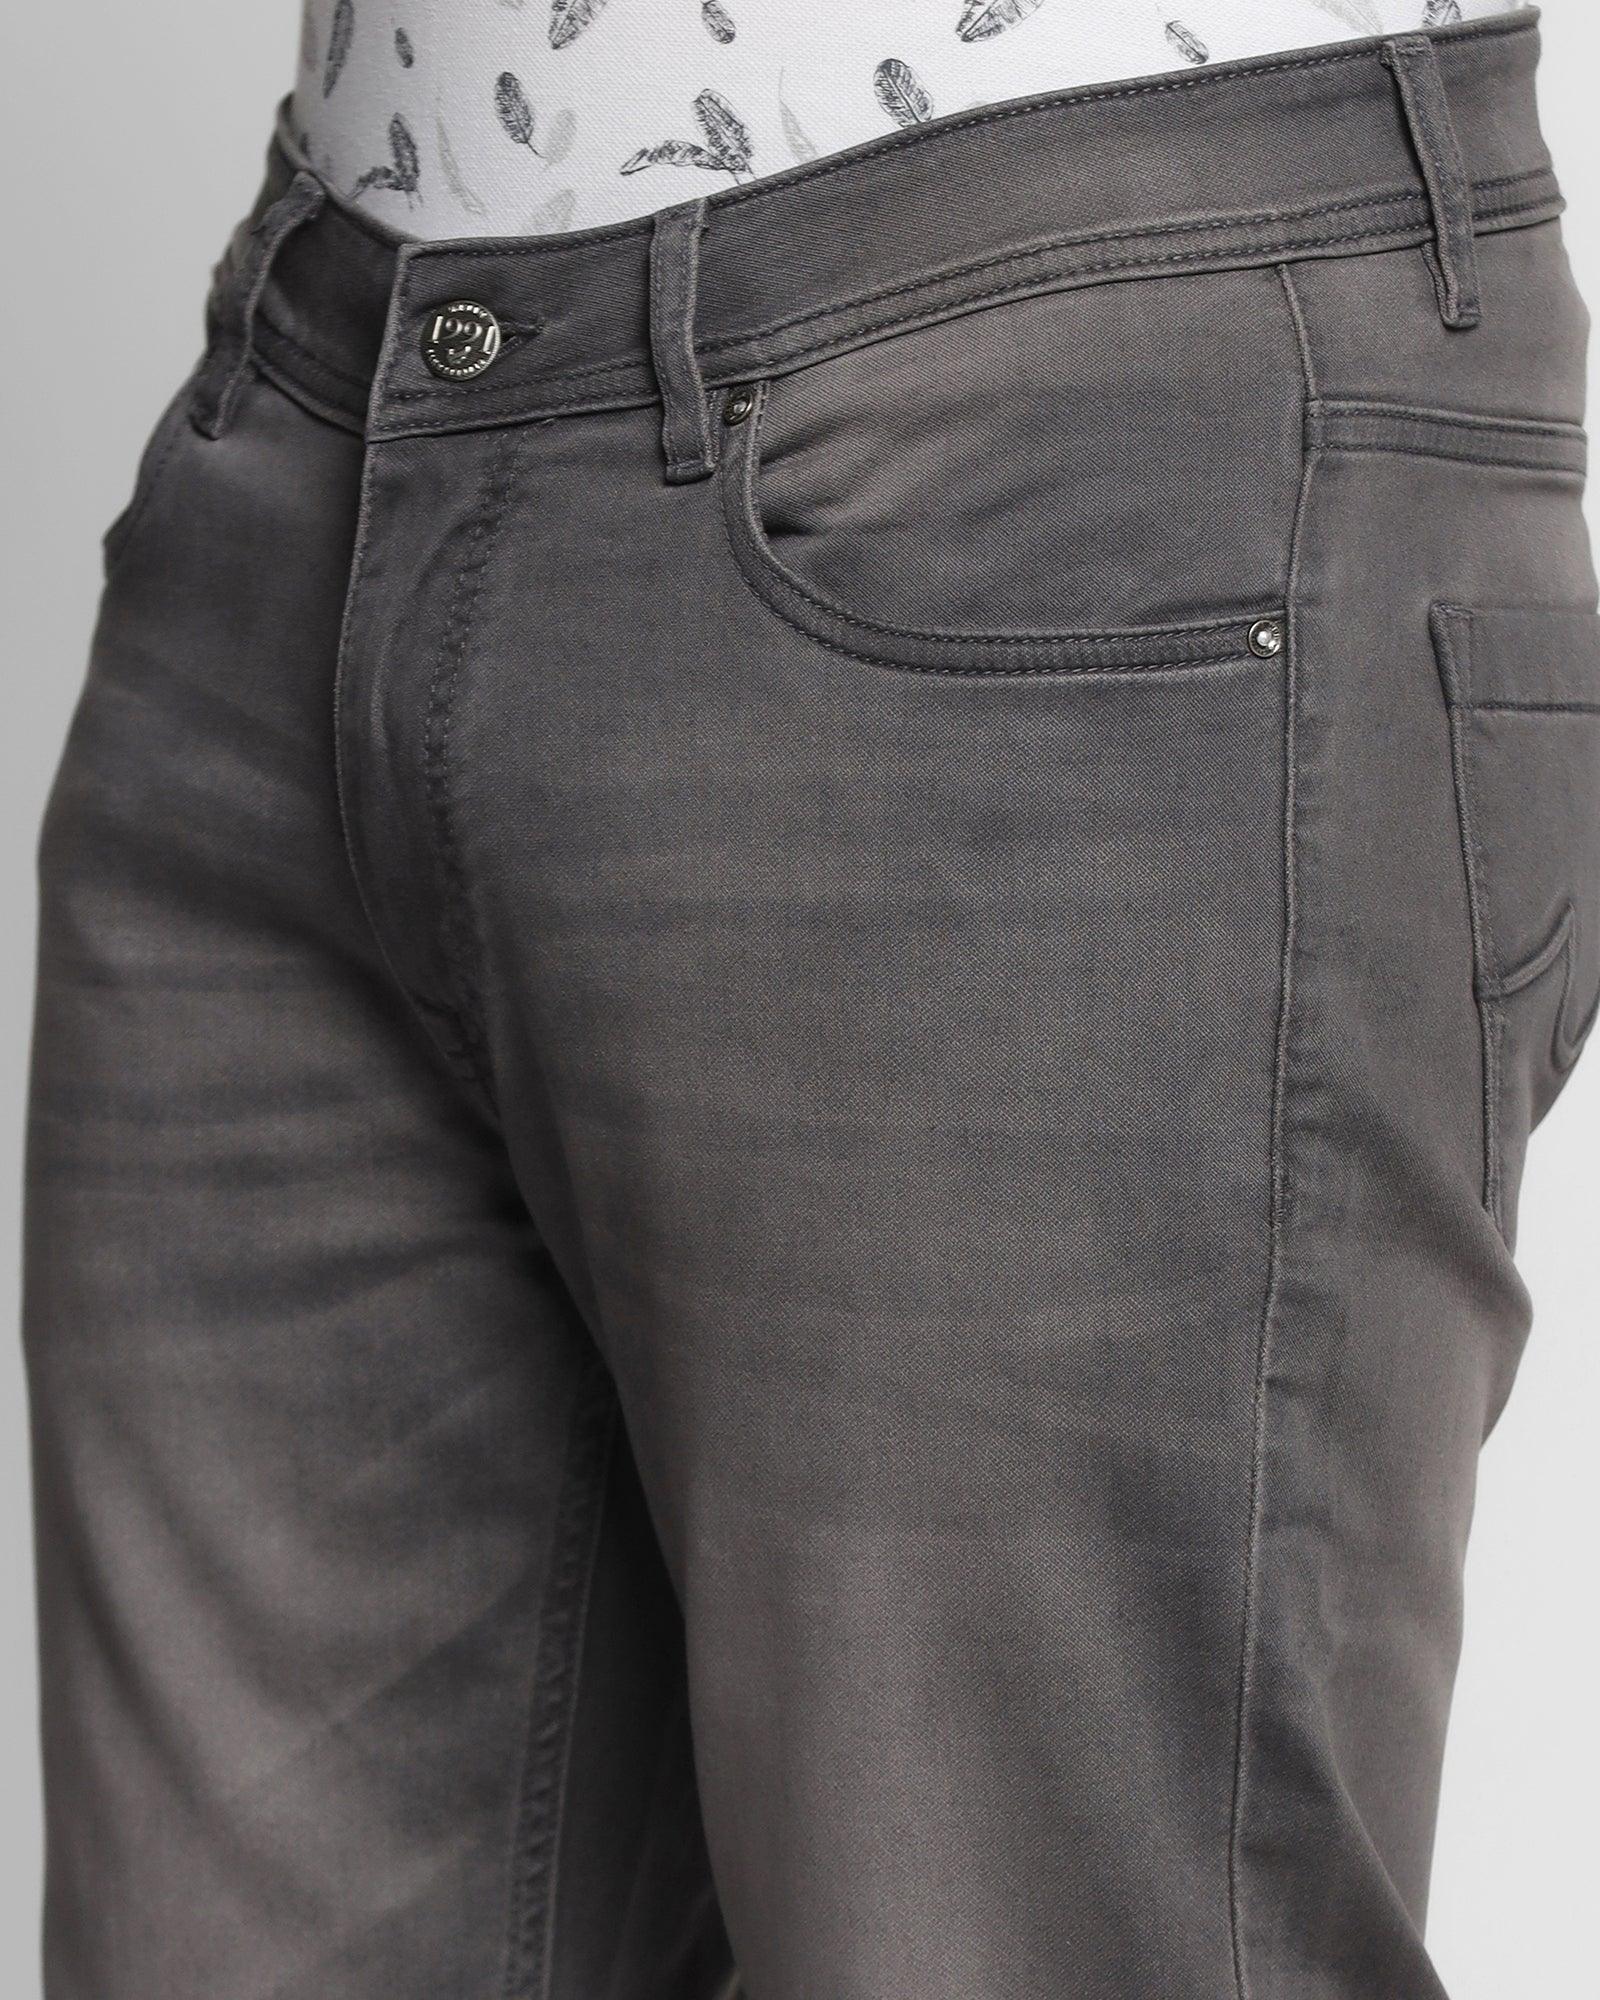 Ultrasoft Slim Comfort Buff Fit Black Jeans - Jax